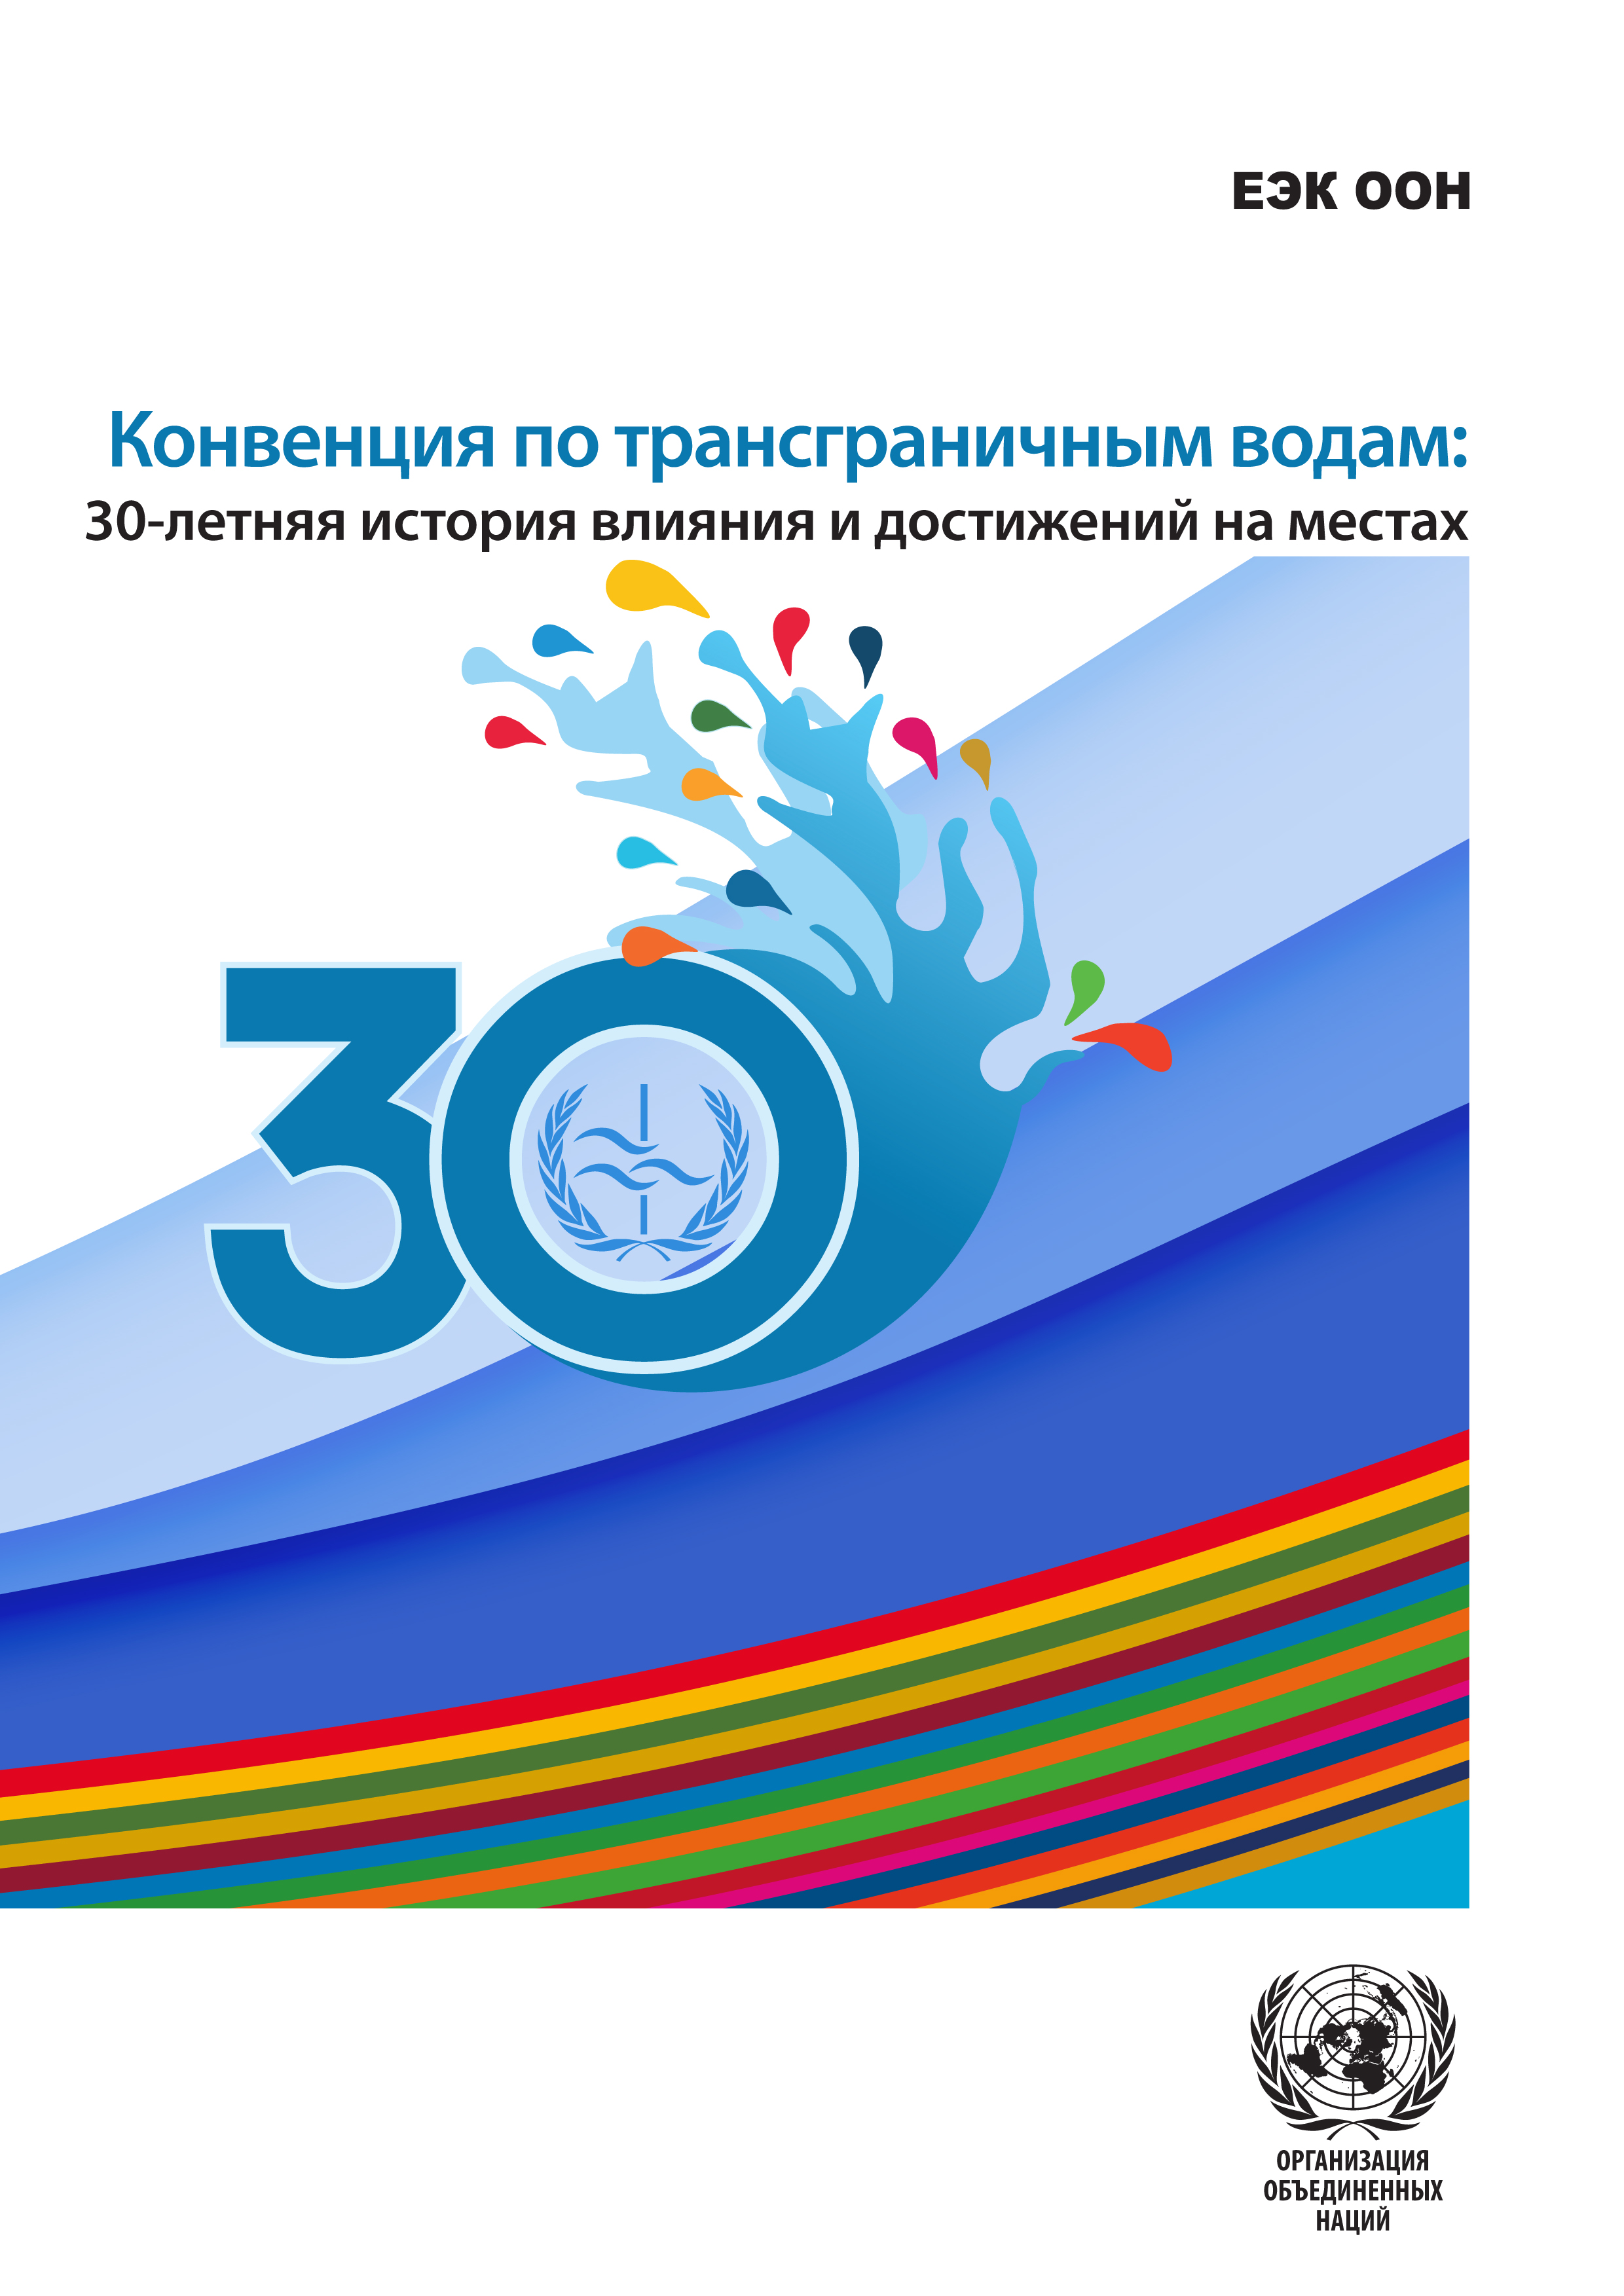 image of Kонвенция по трансграничным водам вносит вклад в сохранение мира и стабильности